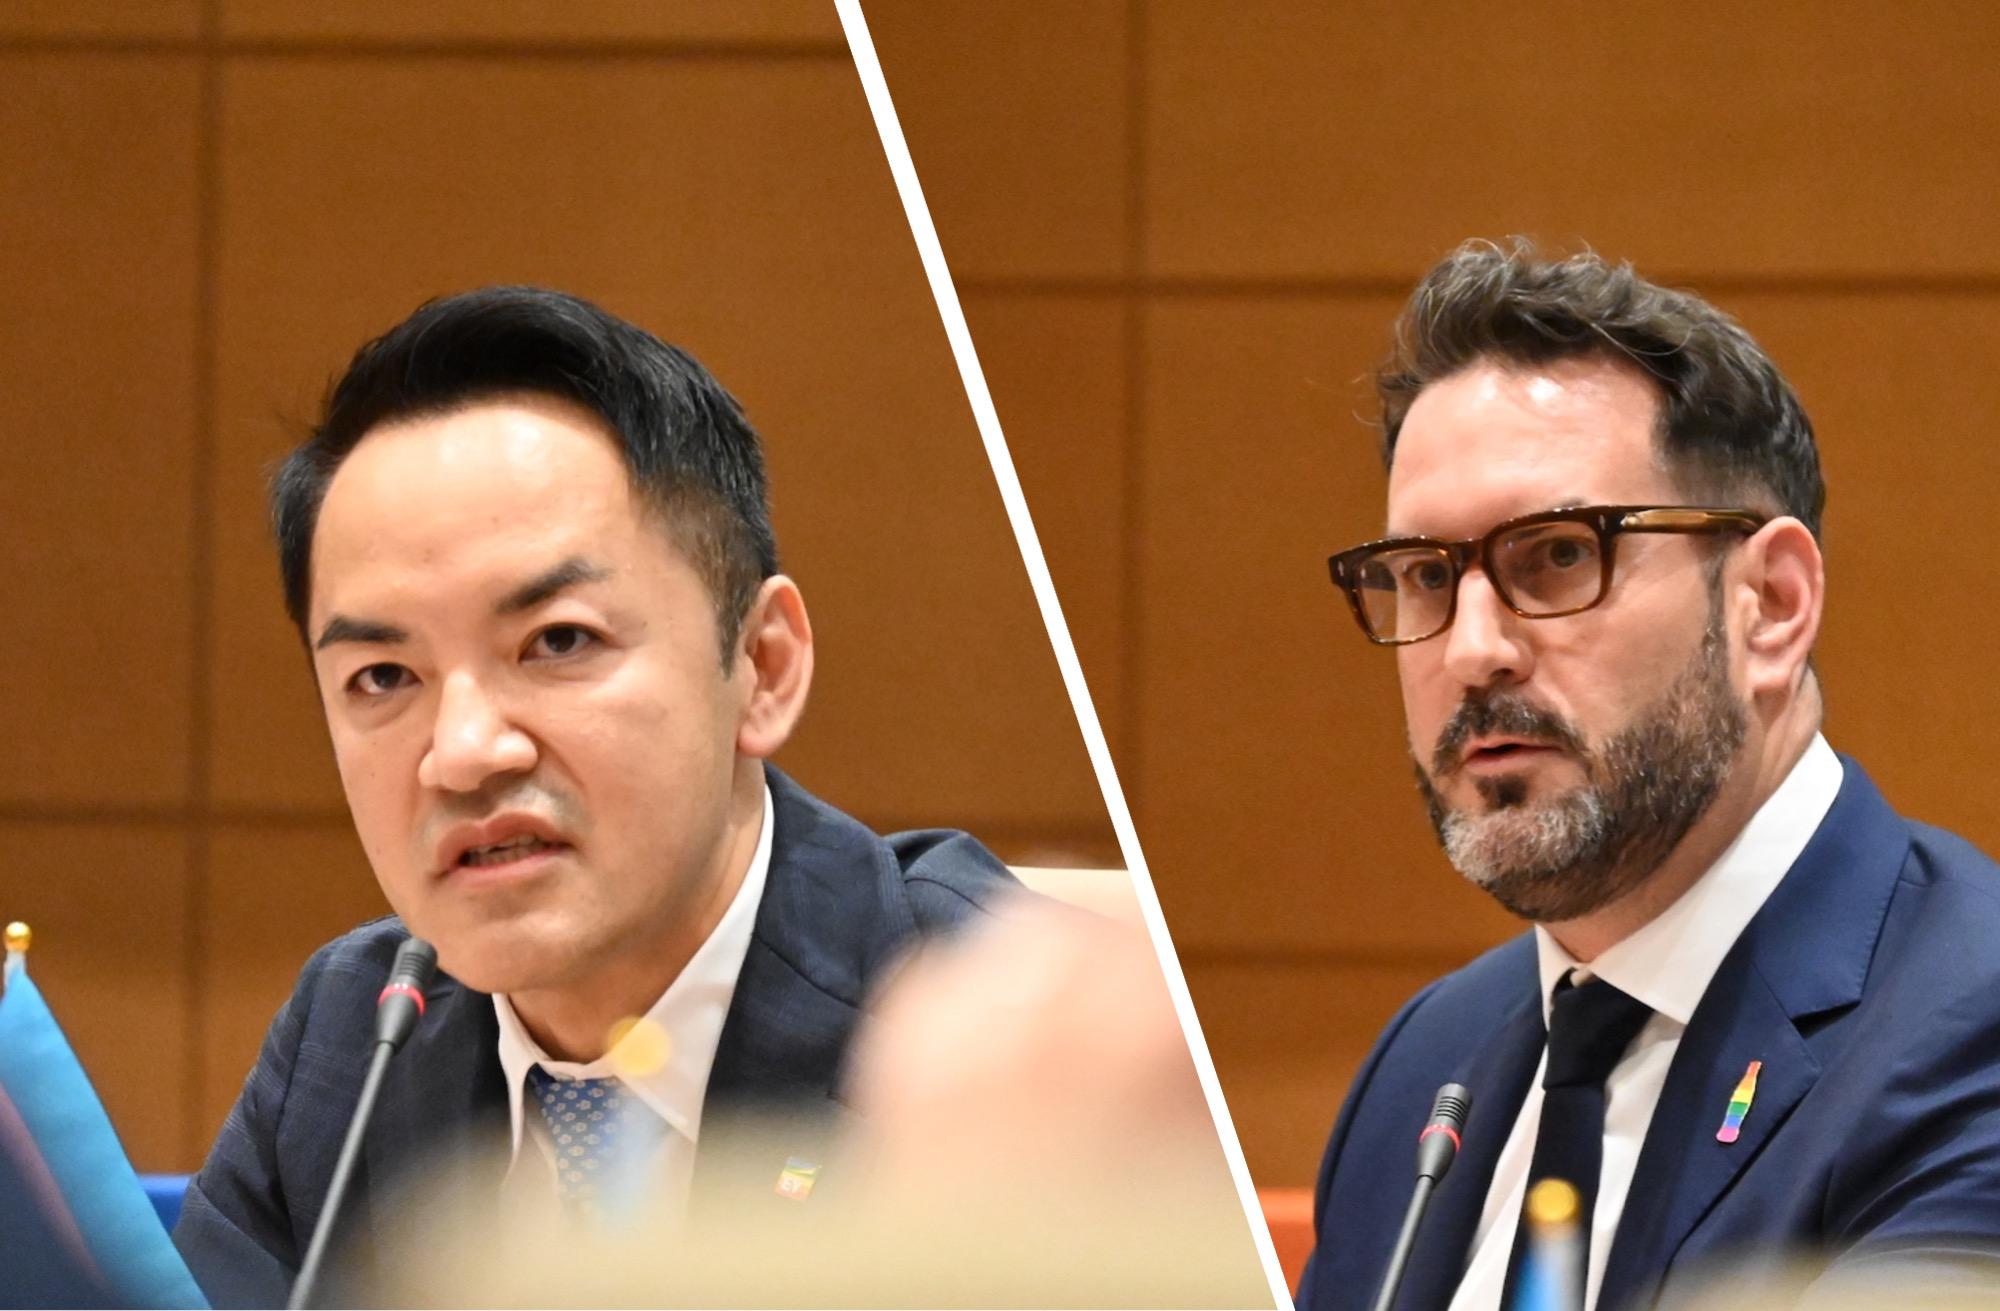 「同性婚なき日本、労働市場から避けられている」外資企業ら訴え。G7各国など参加、初の国際会議